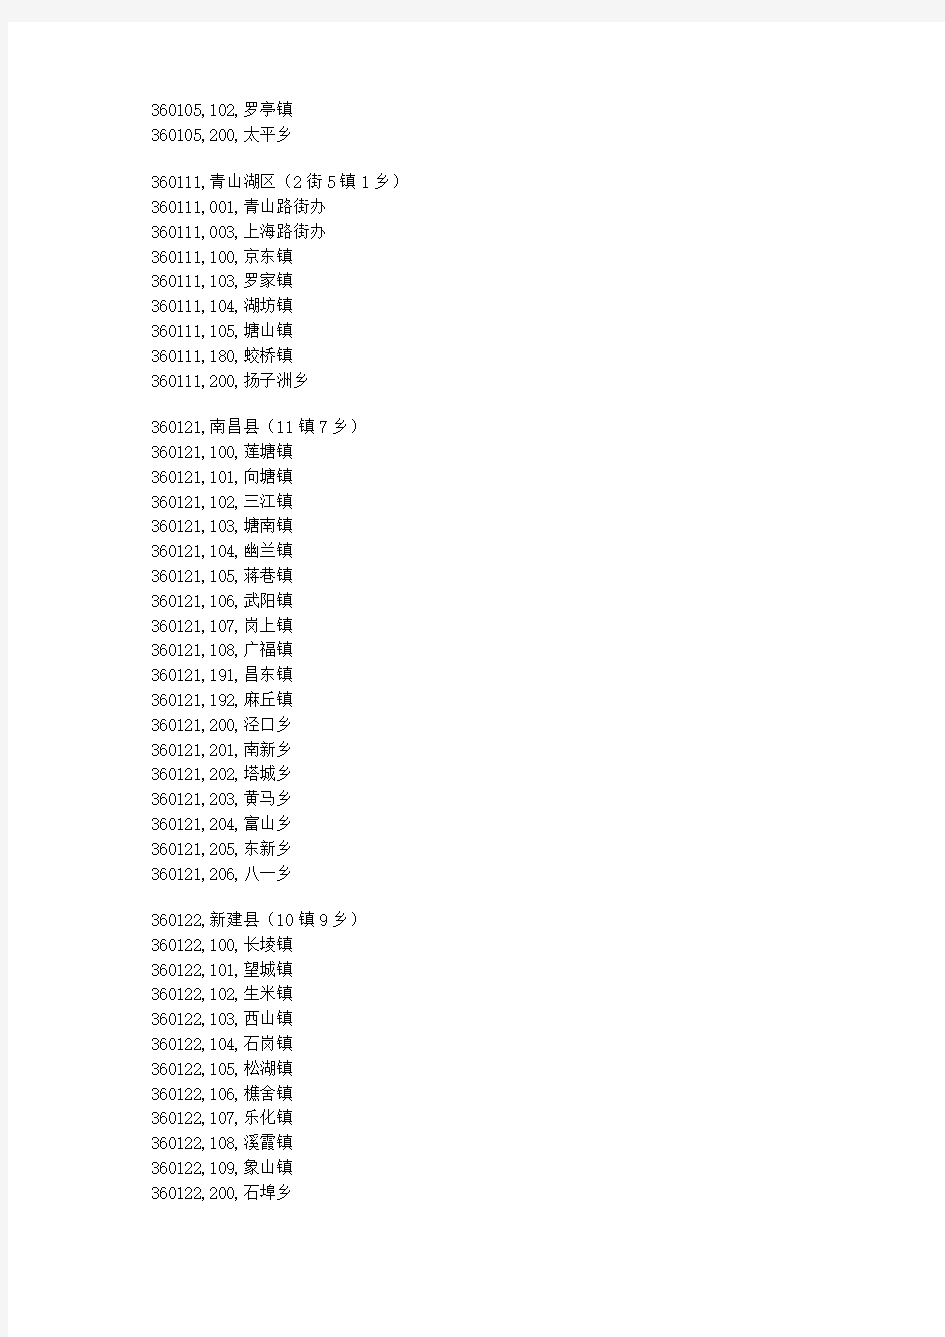 江西省行政区划代码表